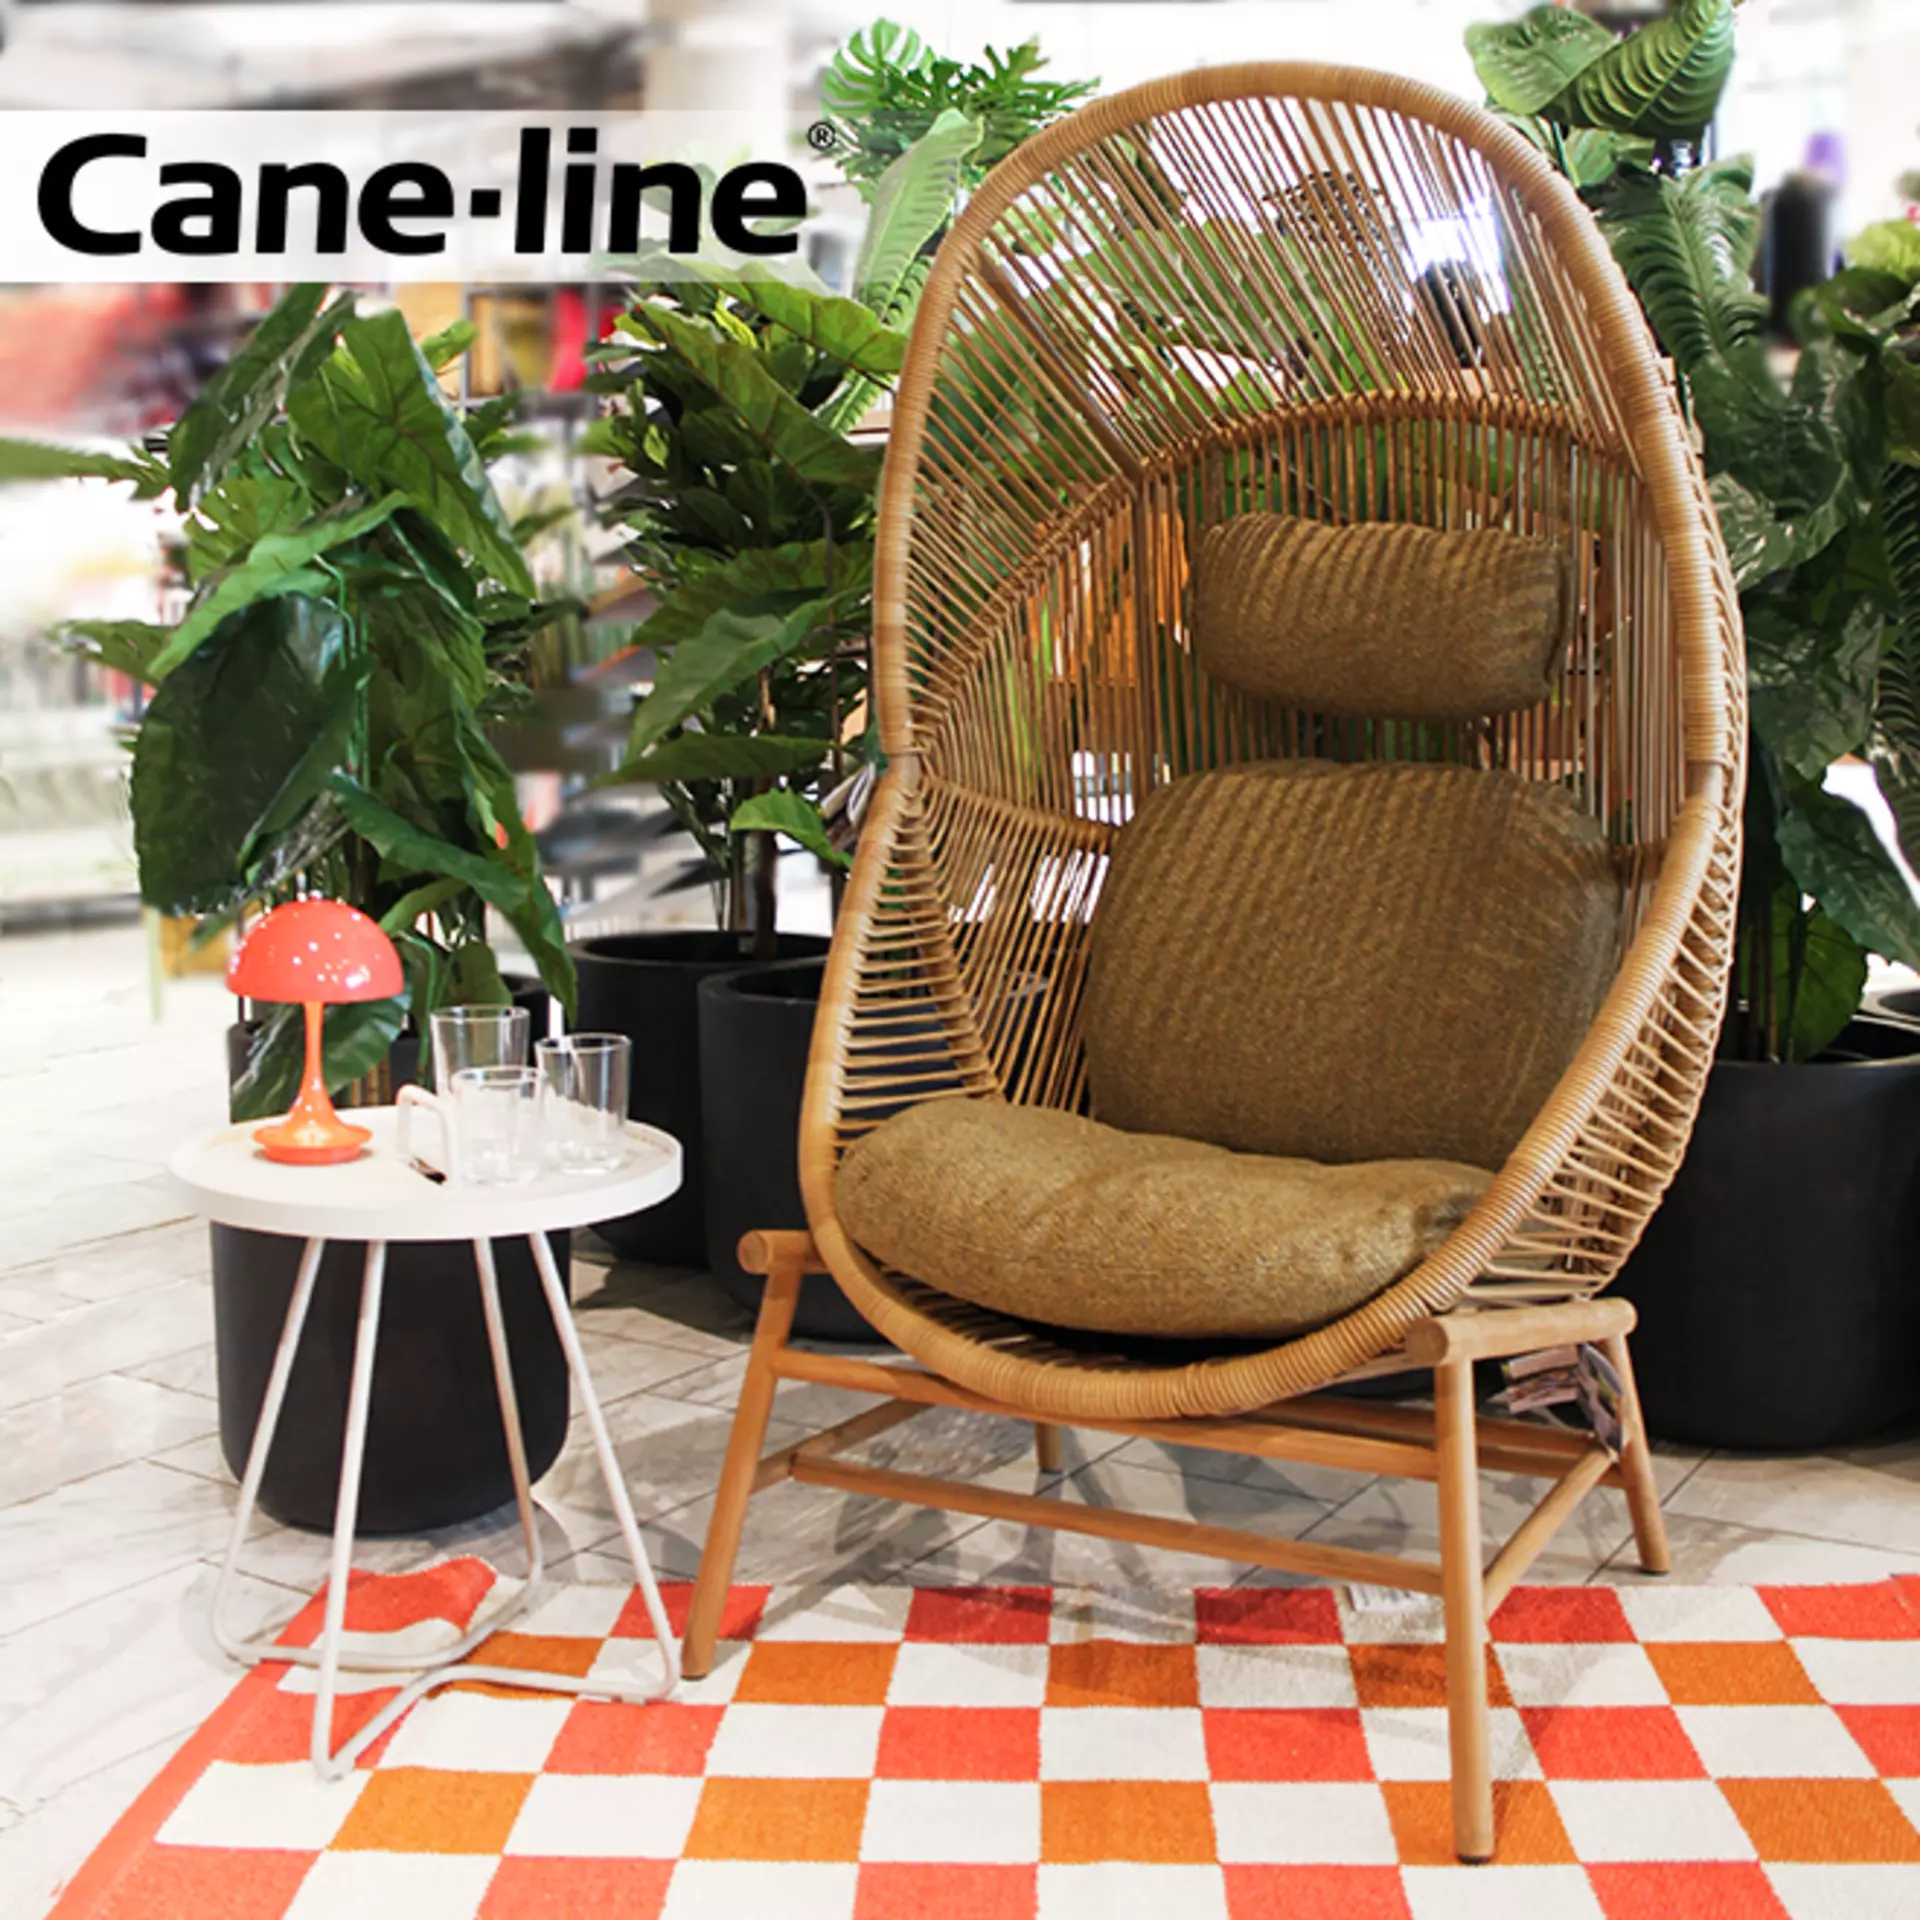 Marke des Monats: Cane-line. Jetzt den Outdoor-Spezialisten bei interni by inhofer entdecken